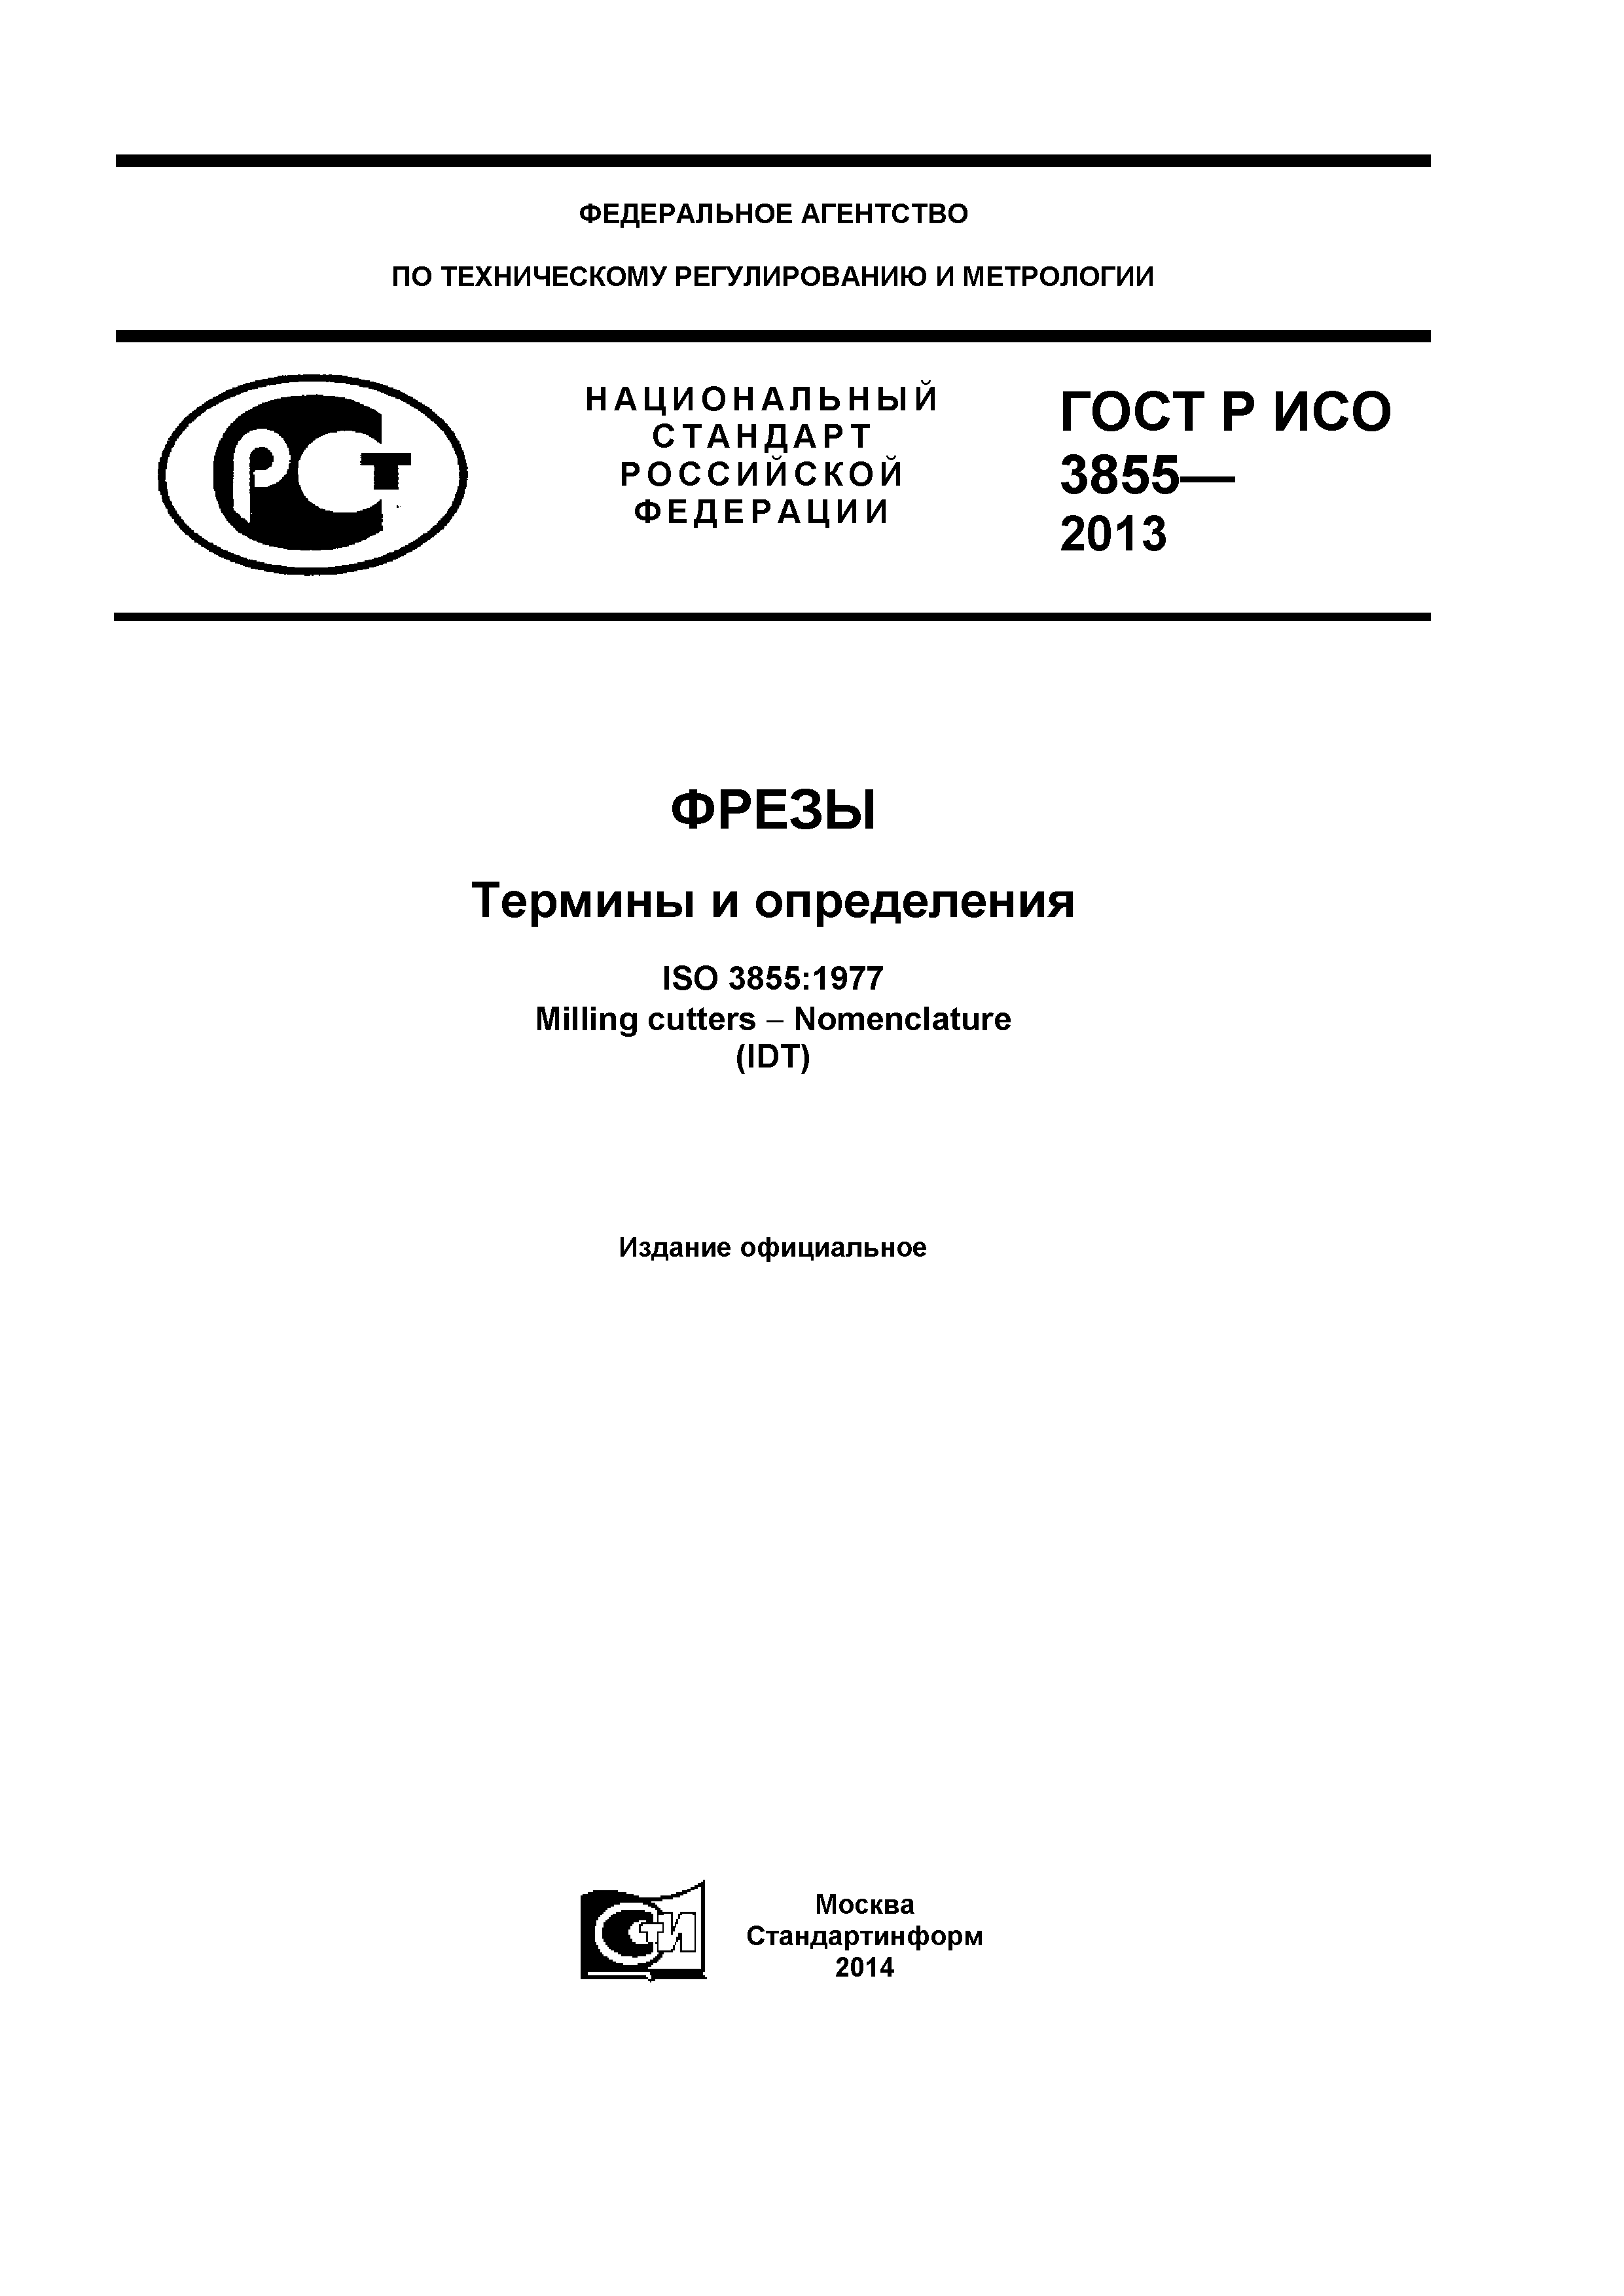 ГОСТ Р ИСО 3855-2013